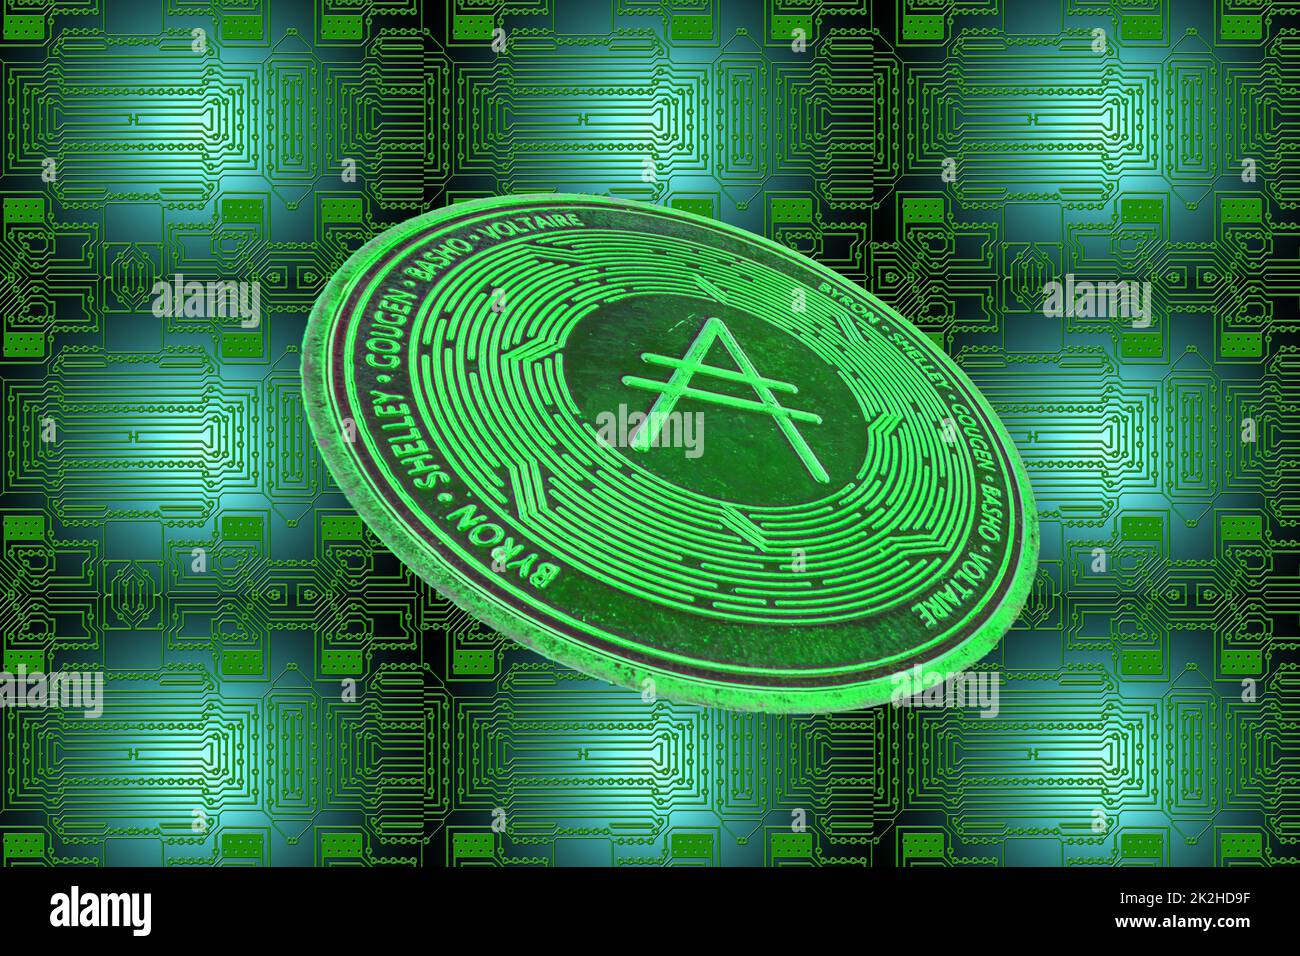 tableau vert et une pièce de monnaie ada verte de cardano crypto oblique Banque D'Images